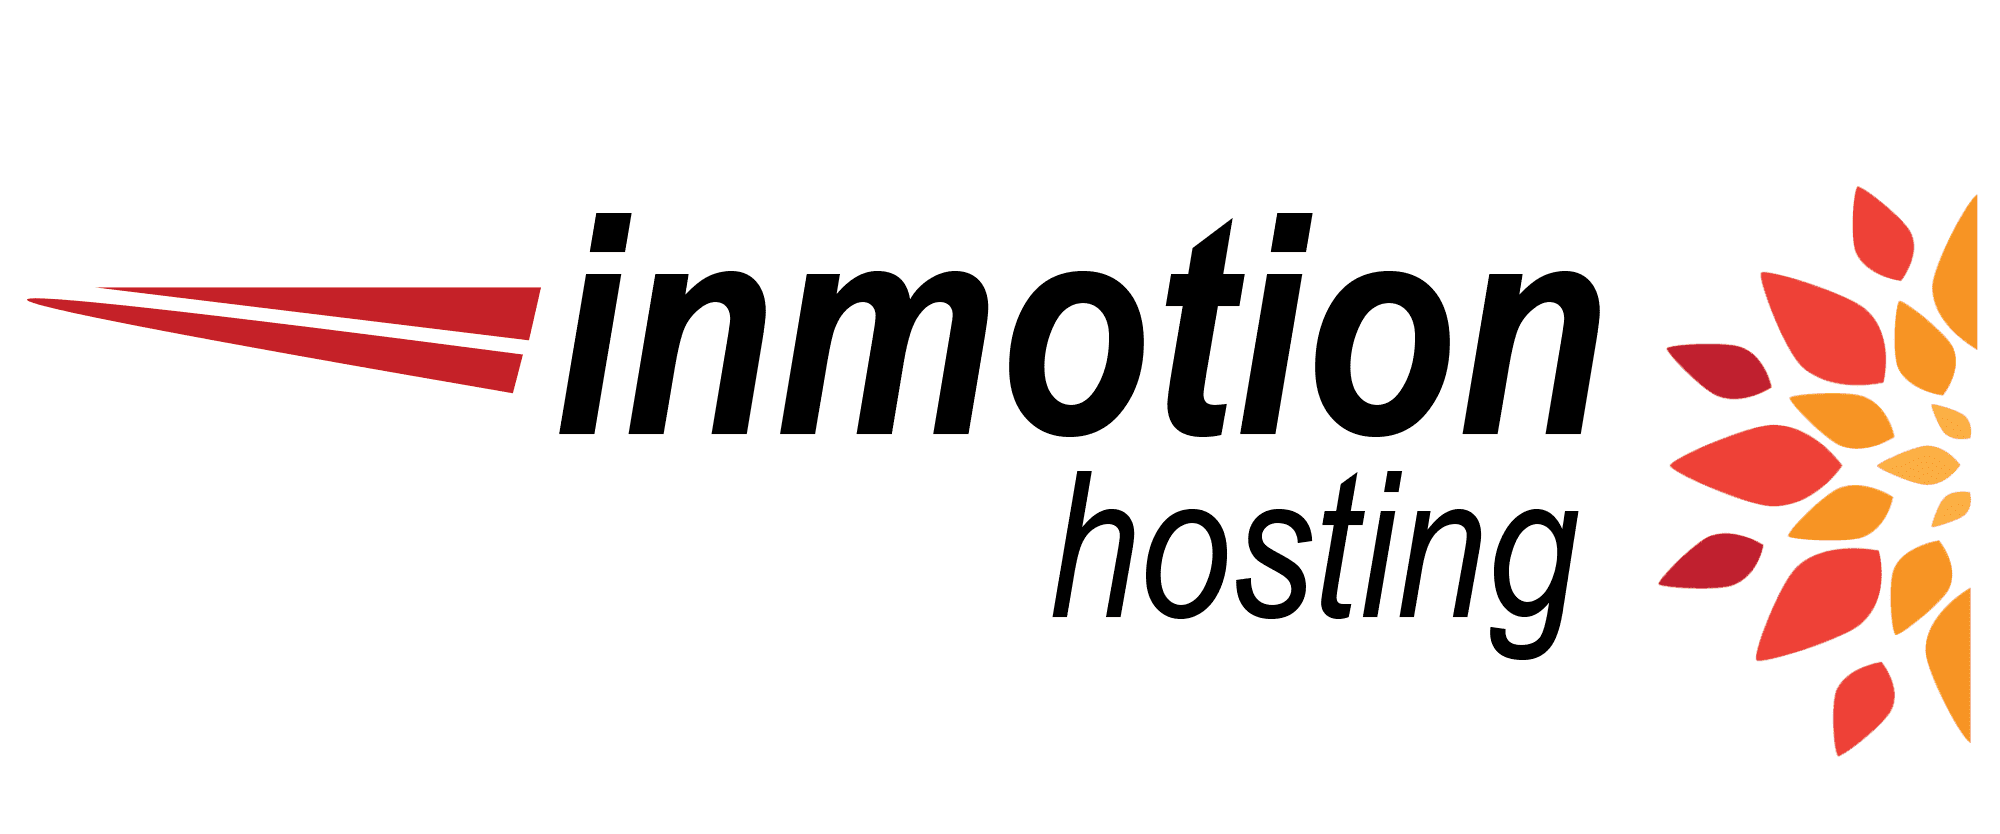 Inmotion-hosting